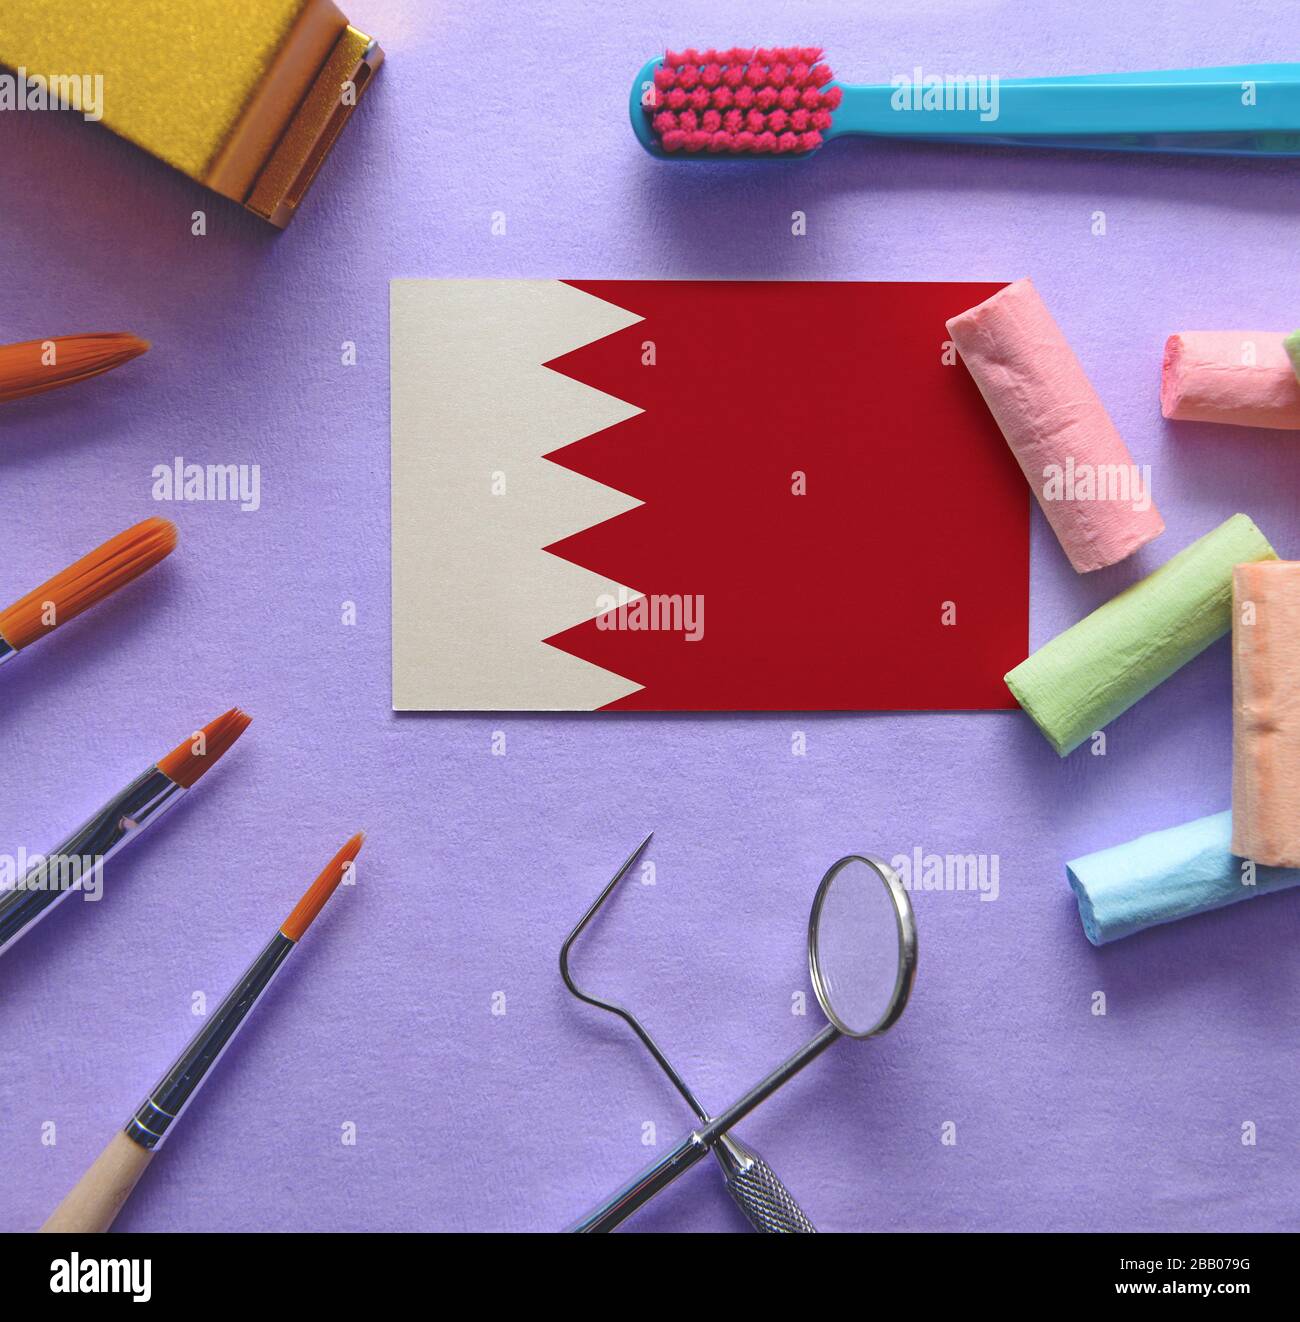 Zahnarztkonzept mit Instrumenten - konzeptionelles Bild des zahnärztlichen Gesundheitssystems von Bahrain Stockfoto